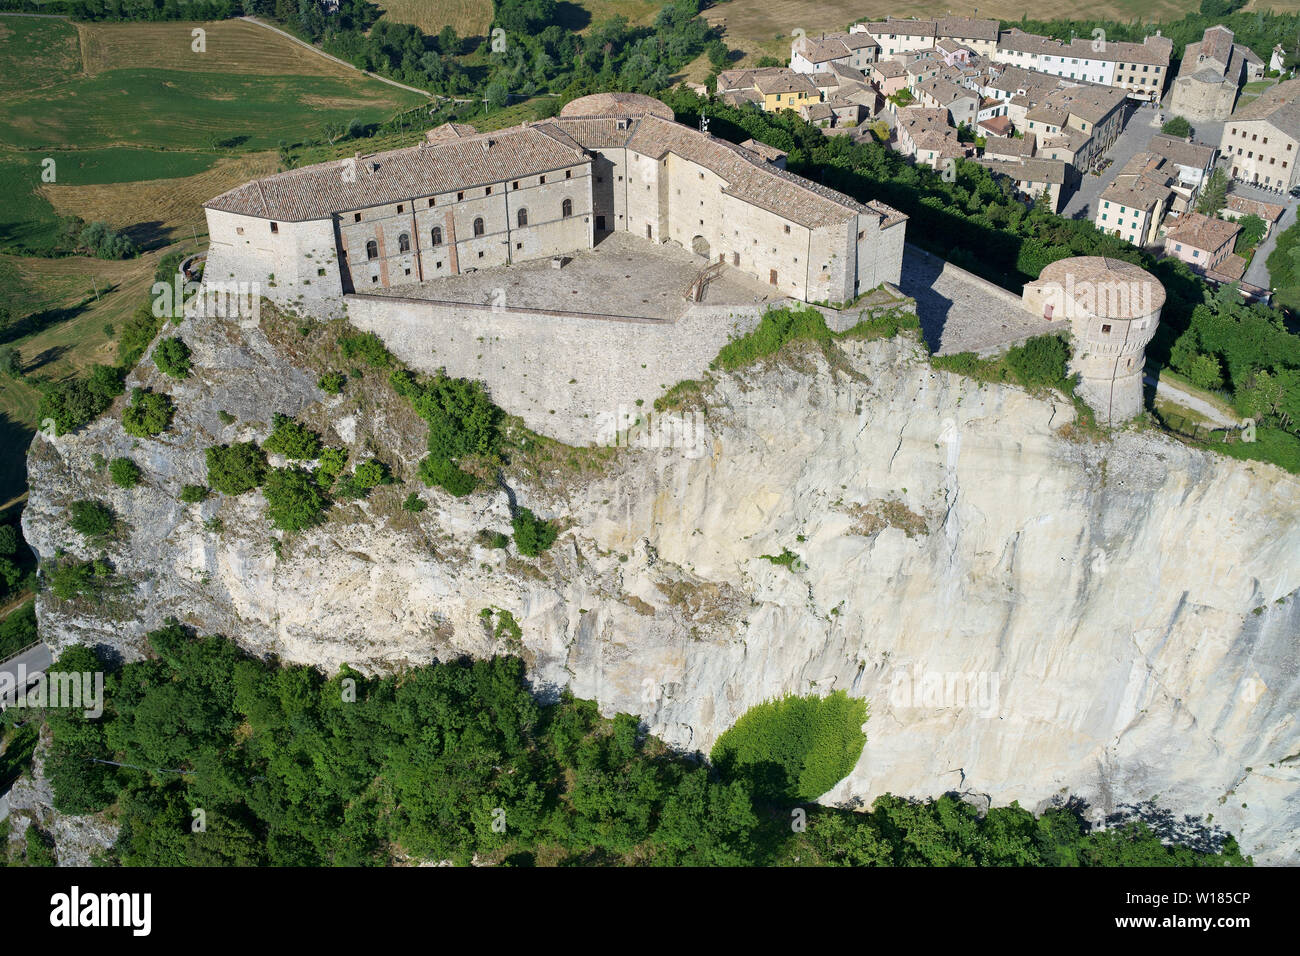 VISTA AEREA. Fortezza medievale in piedi su un mesa isolato. San Leo, Provincia di Rimini, Emilia-Romagna, Italia. Foto Stock